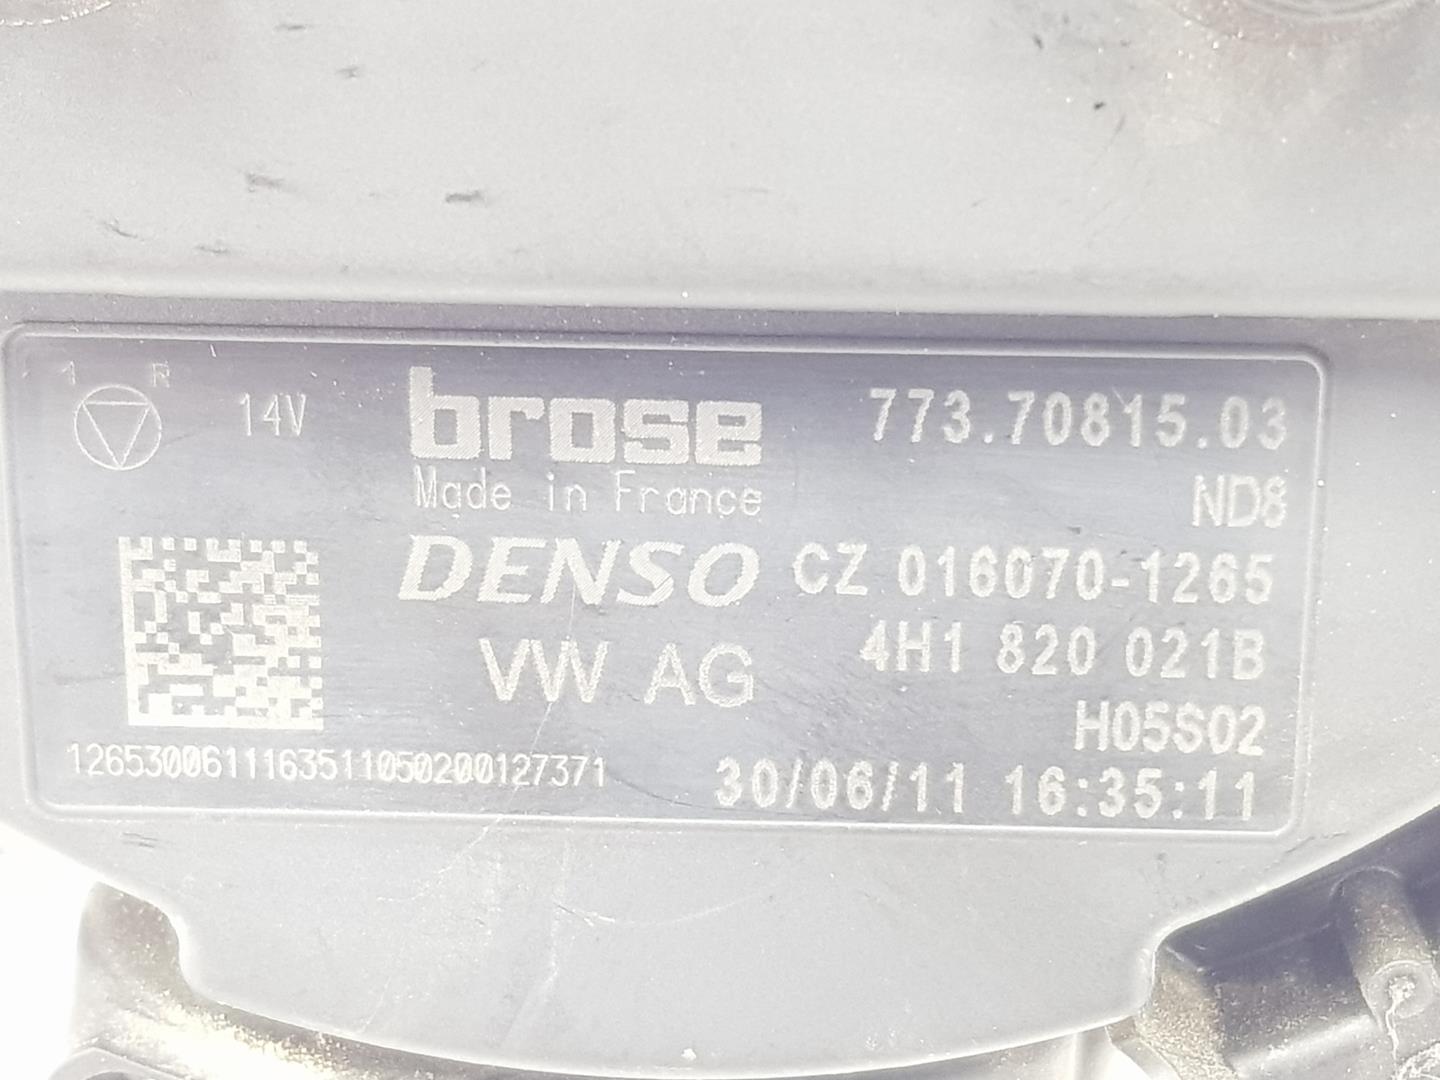 AUDI A6 C7/4G (2010-2020) Heater Blower Fan 4H1820021B, 4H1820021B 24172832